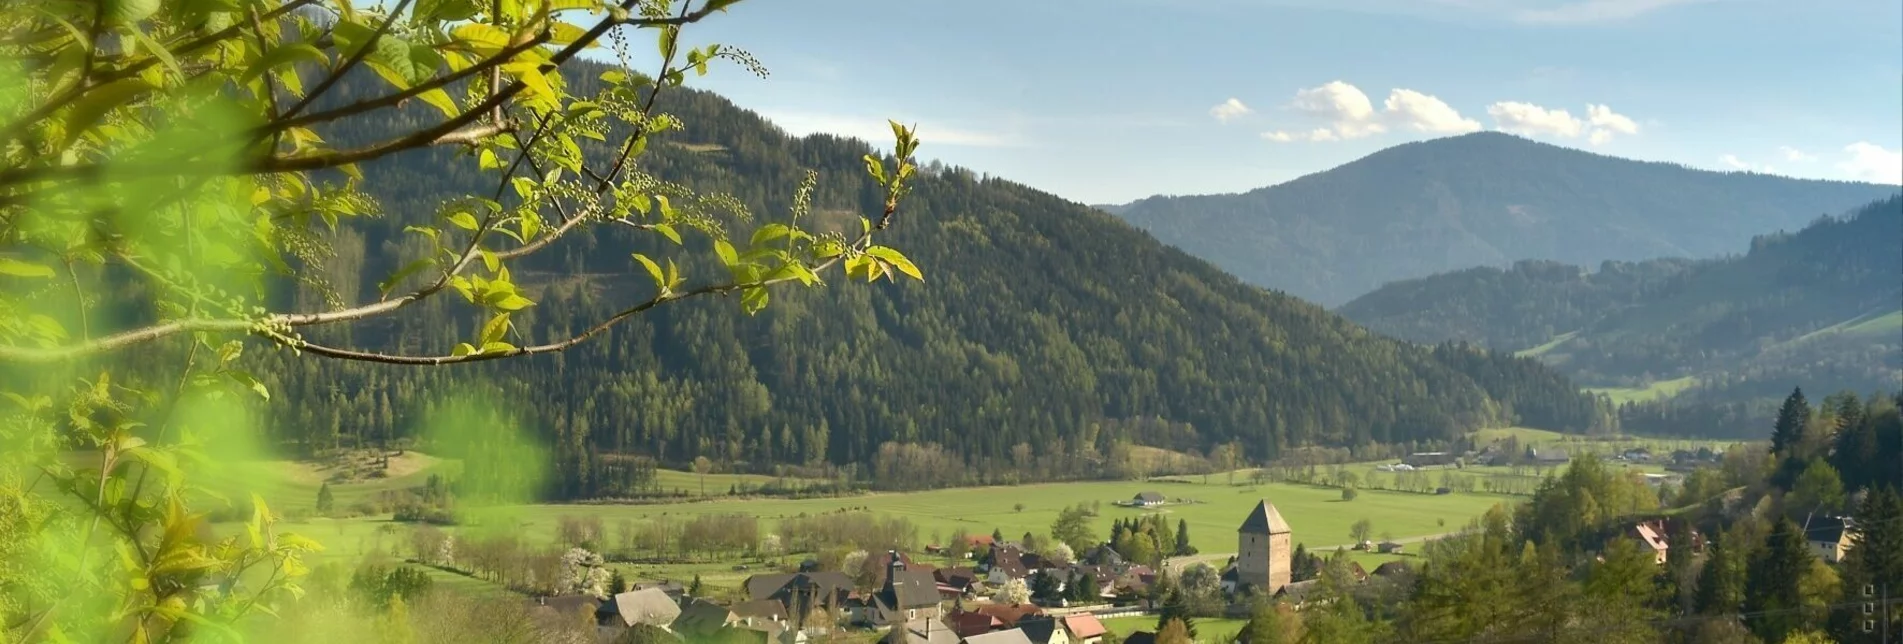 Wanderung Feistritzer Aussichtswanderung auf den Wachenberg - Touren-Impression #1 | © Tourismusverband Region Murau